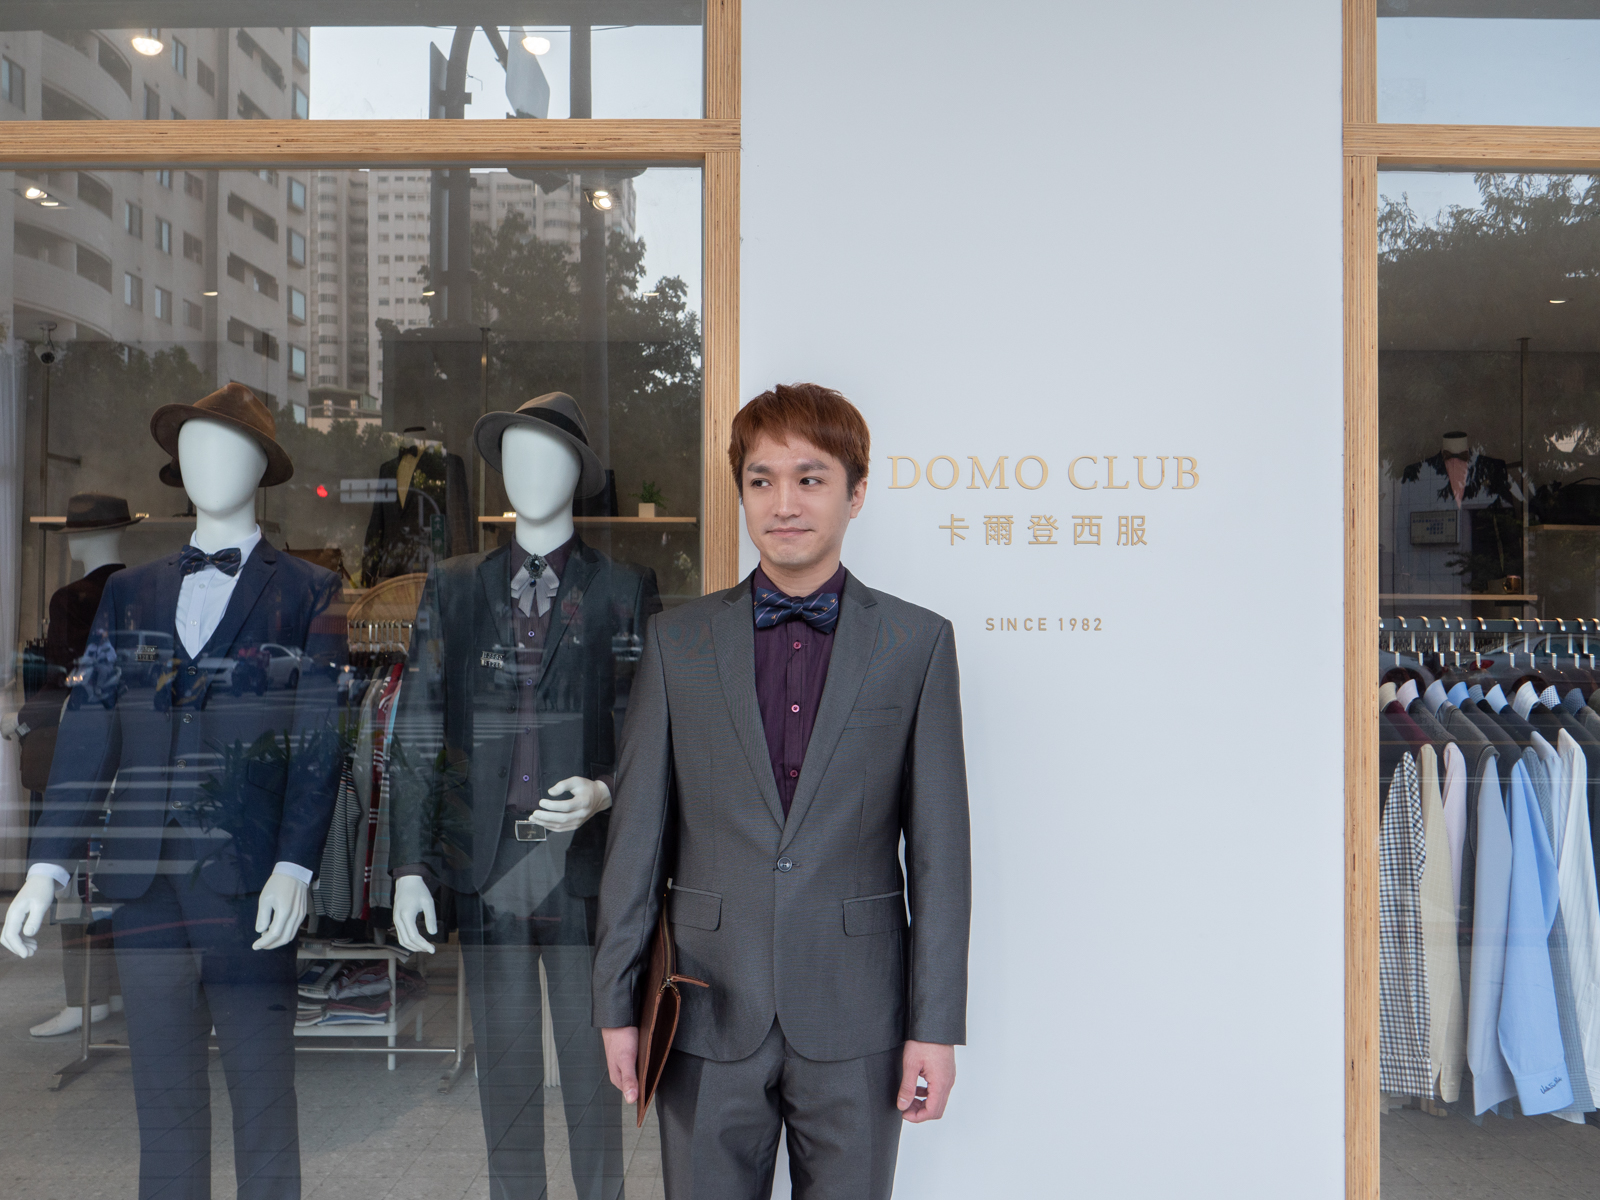 台中西裝推薦 卡爾登西服 Domo Club 適合各種身型 質感成套平價西裝